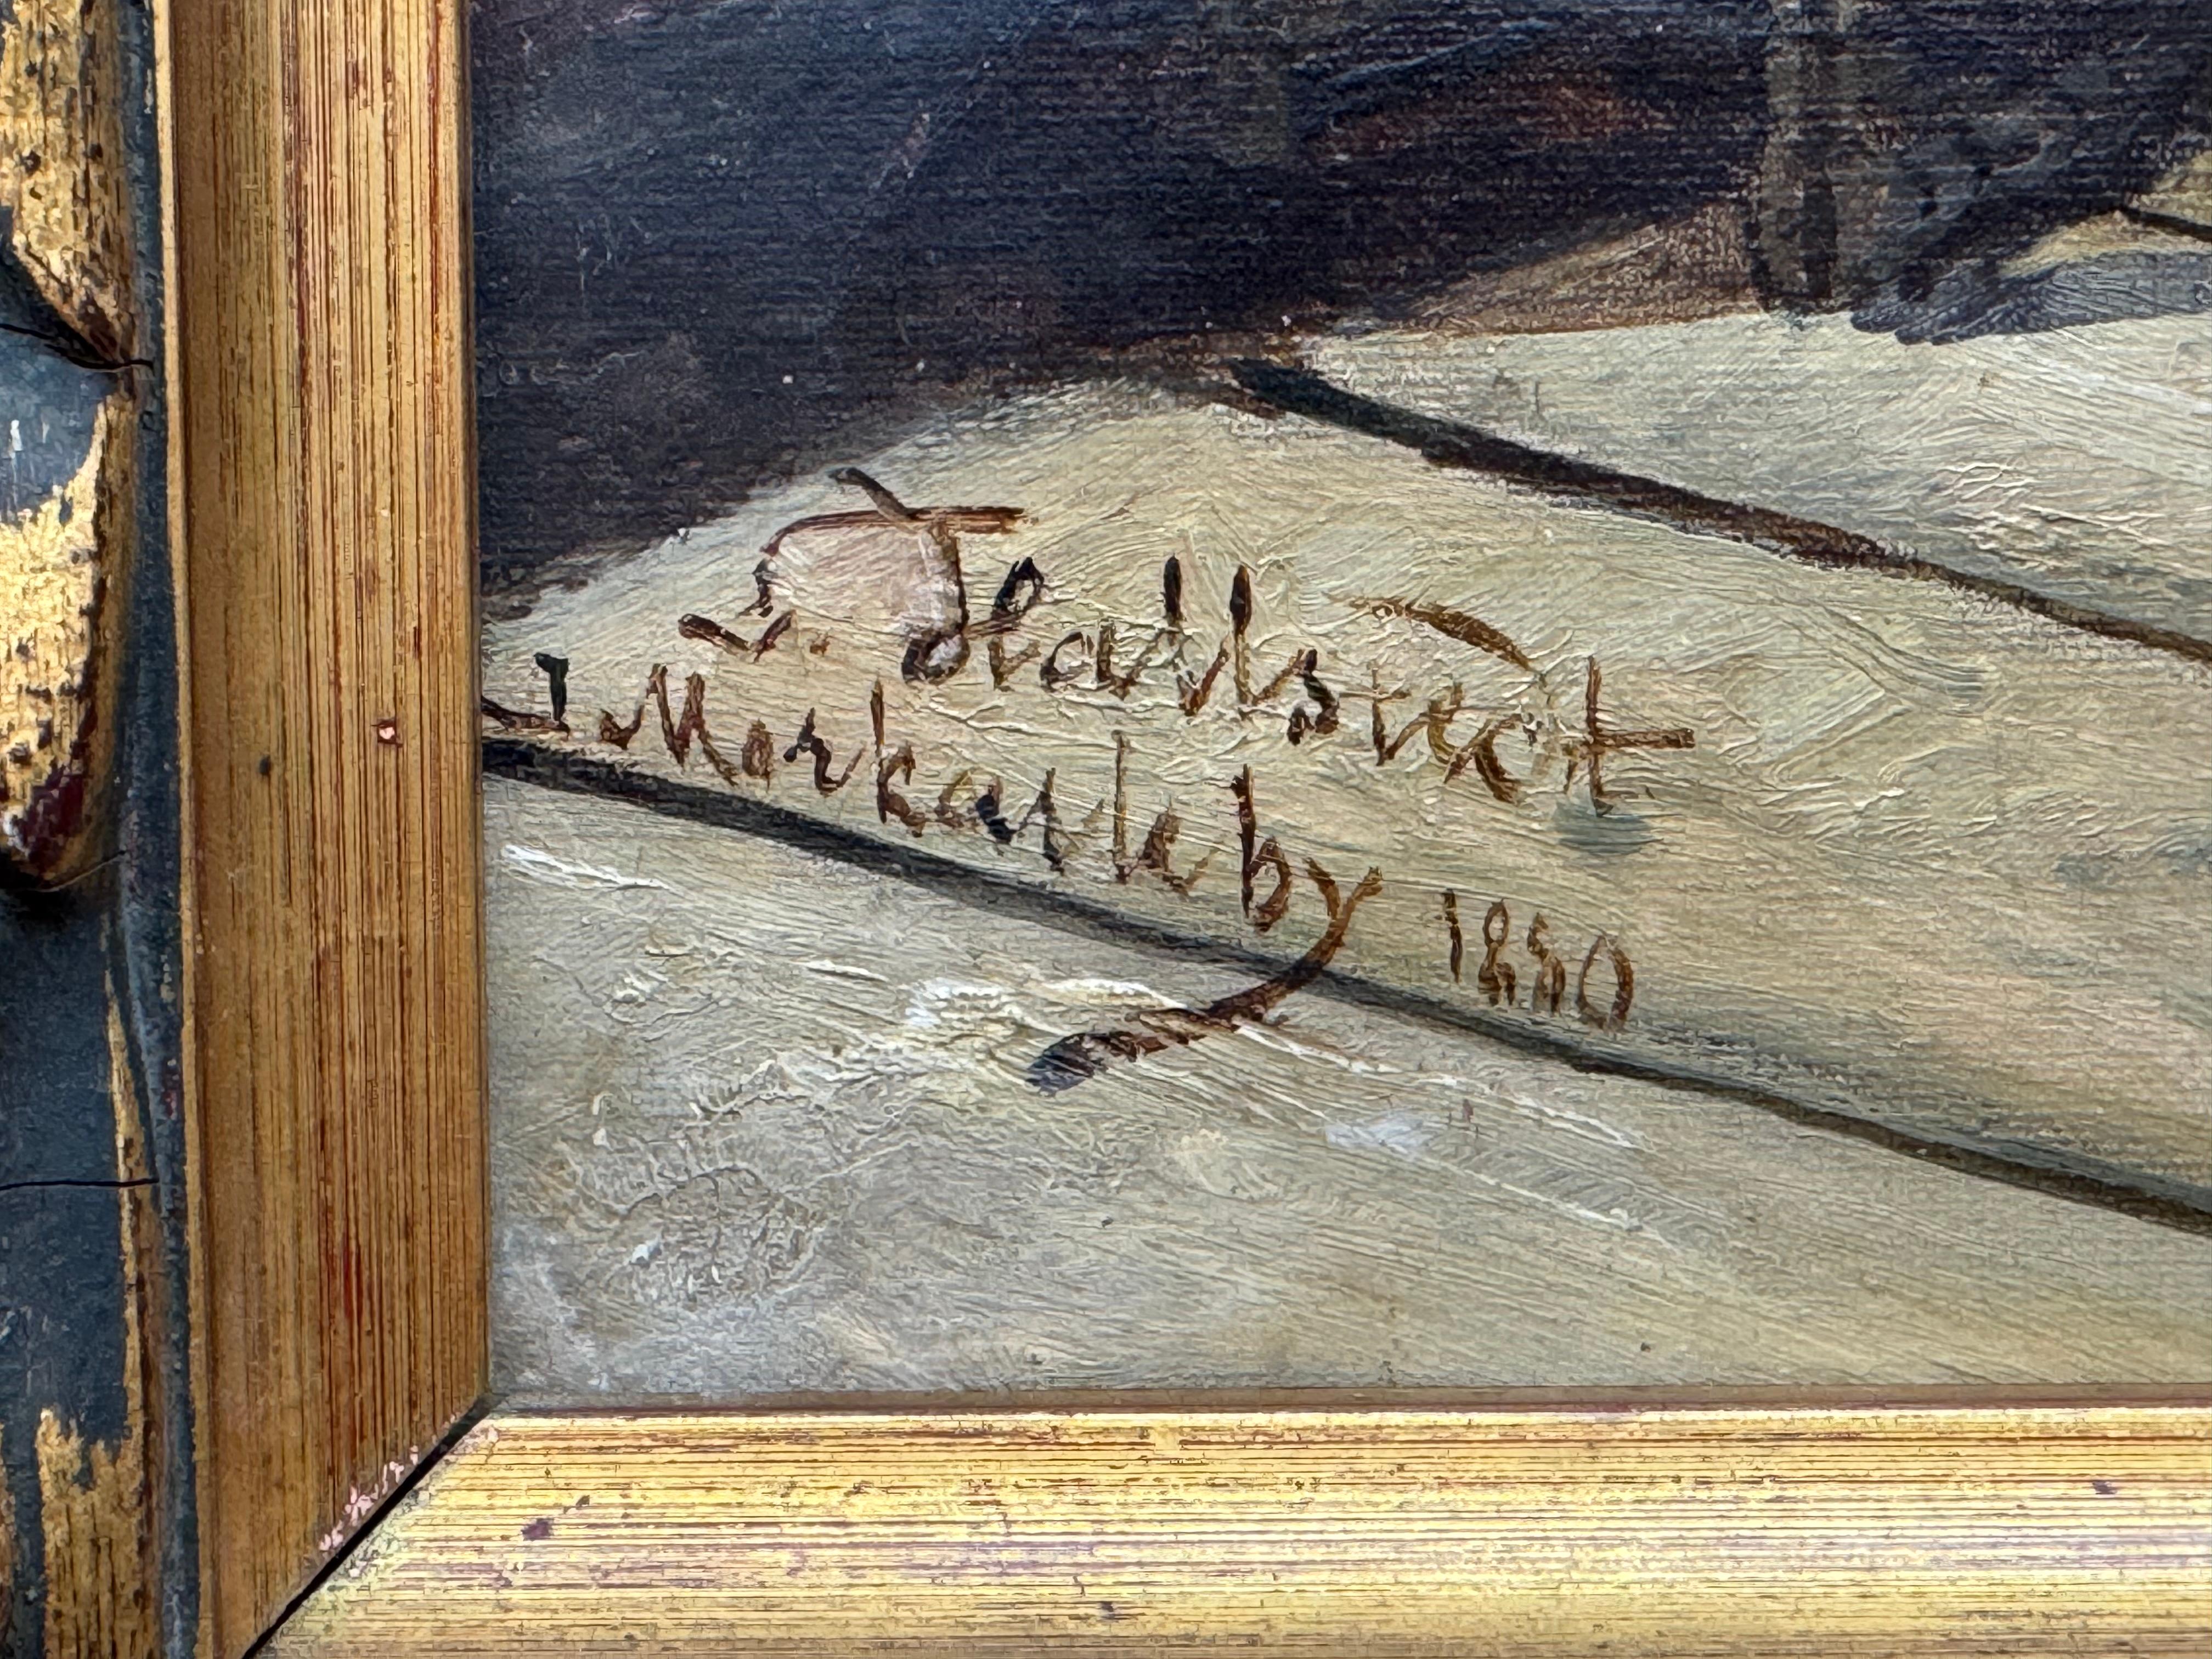 1880 Landhausinterieur 

Öl auf Leinwand

14,75 x 19,25 ungerahmt, 18,25 x 22,75 gerahmt

Unterschrift unleserlich 